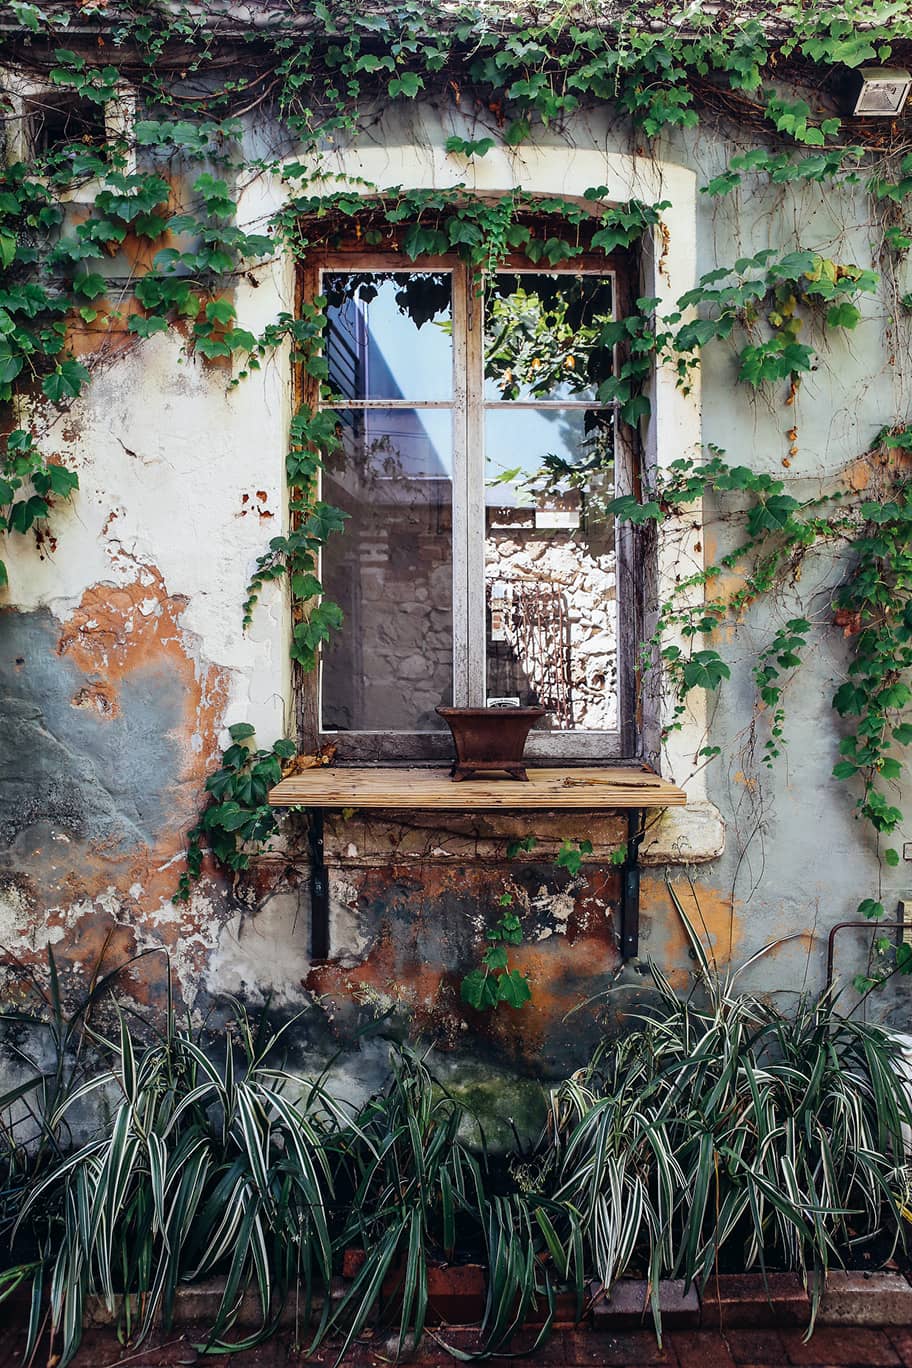 Image illustrant un jardin sans entretien. On y voit une fenêtre entouré de lierre et des plantes mal entretenues